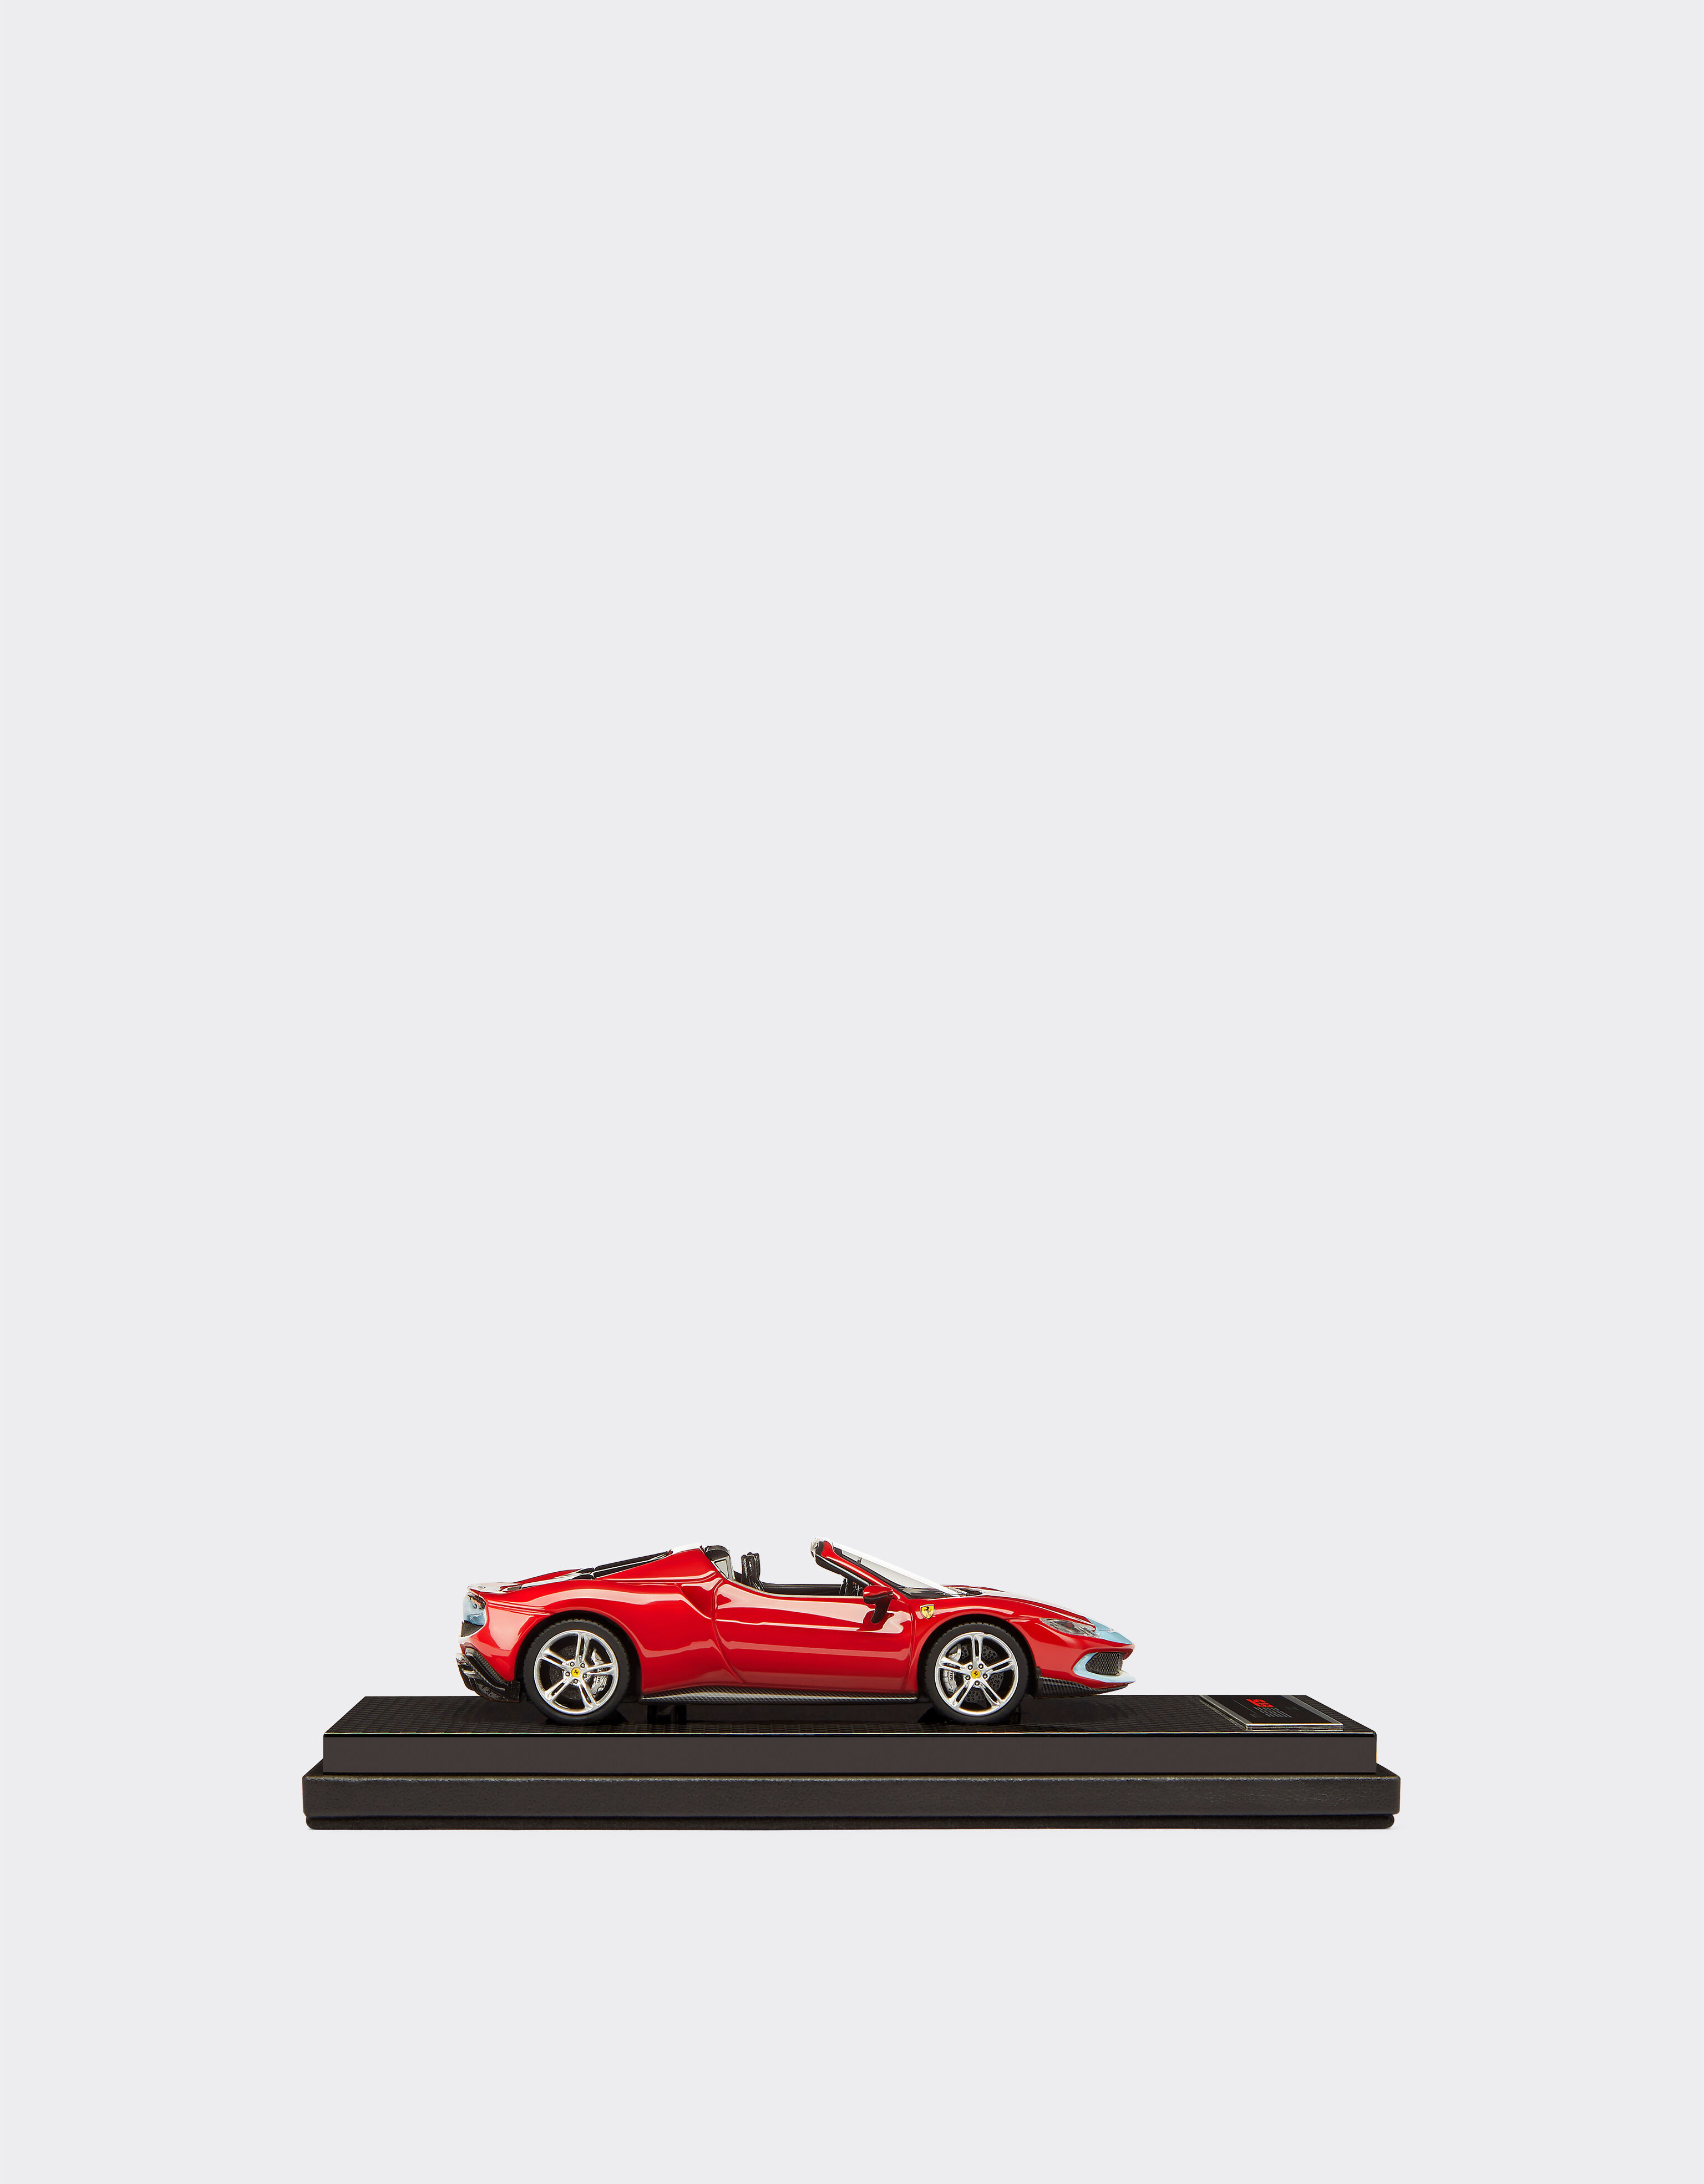 Ferrari Ferrari 296 GTS 1:43スケール モデルカー Rosso Corsa 20168f